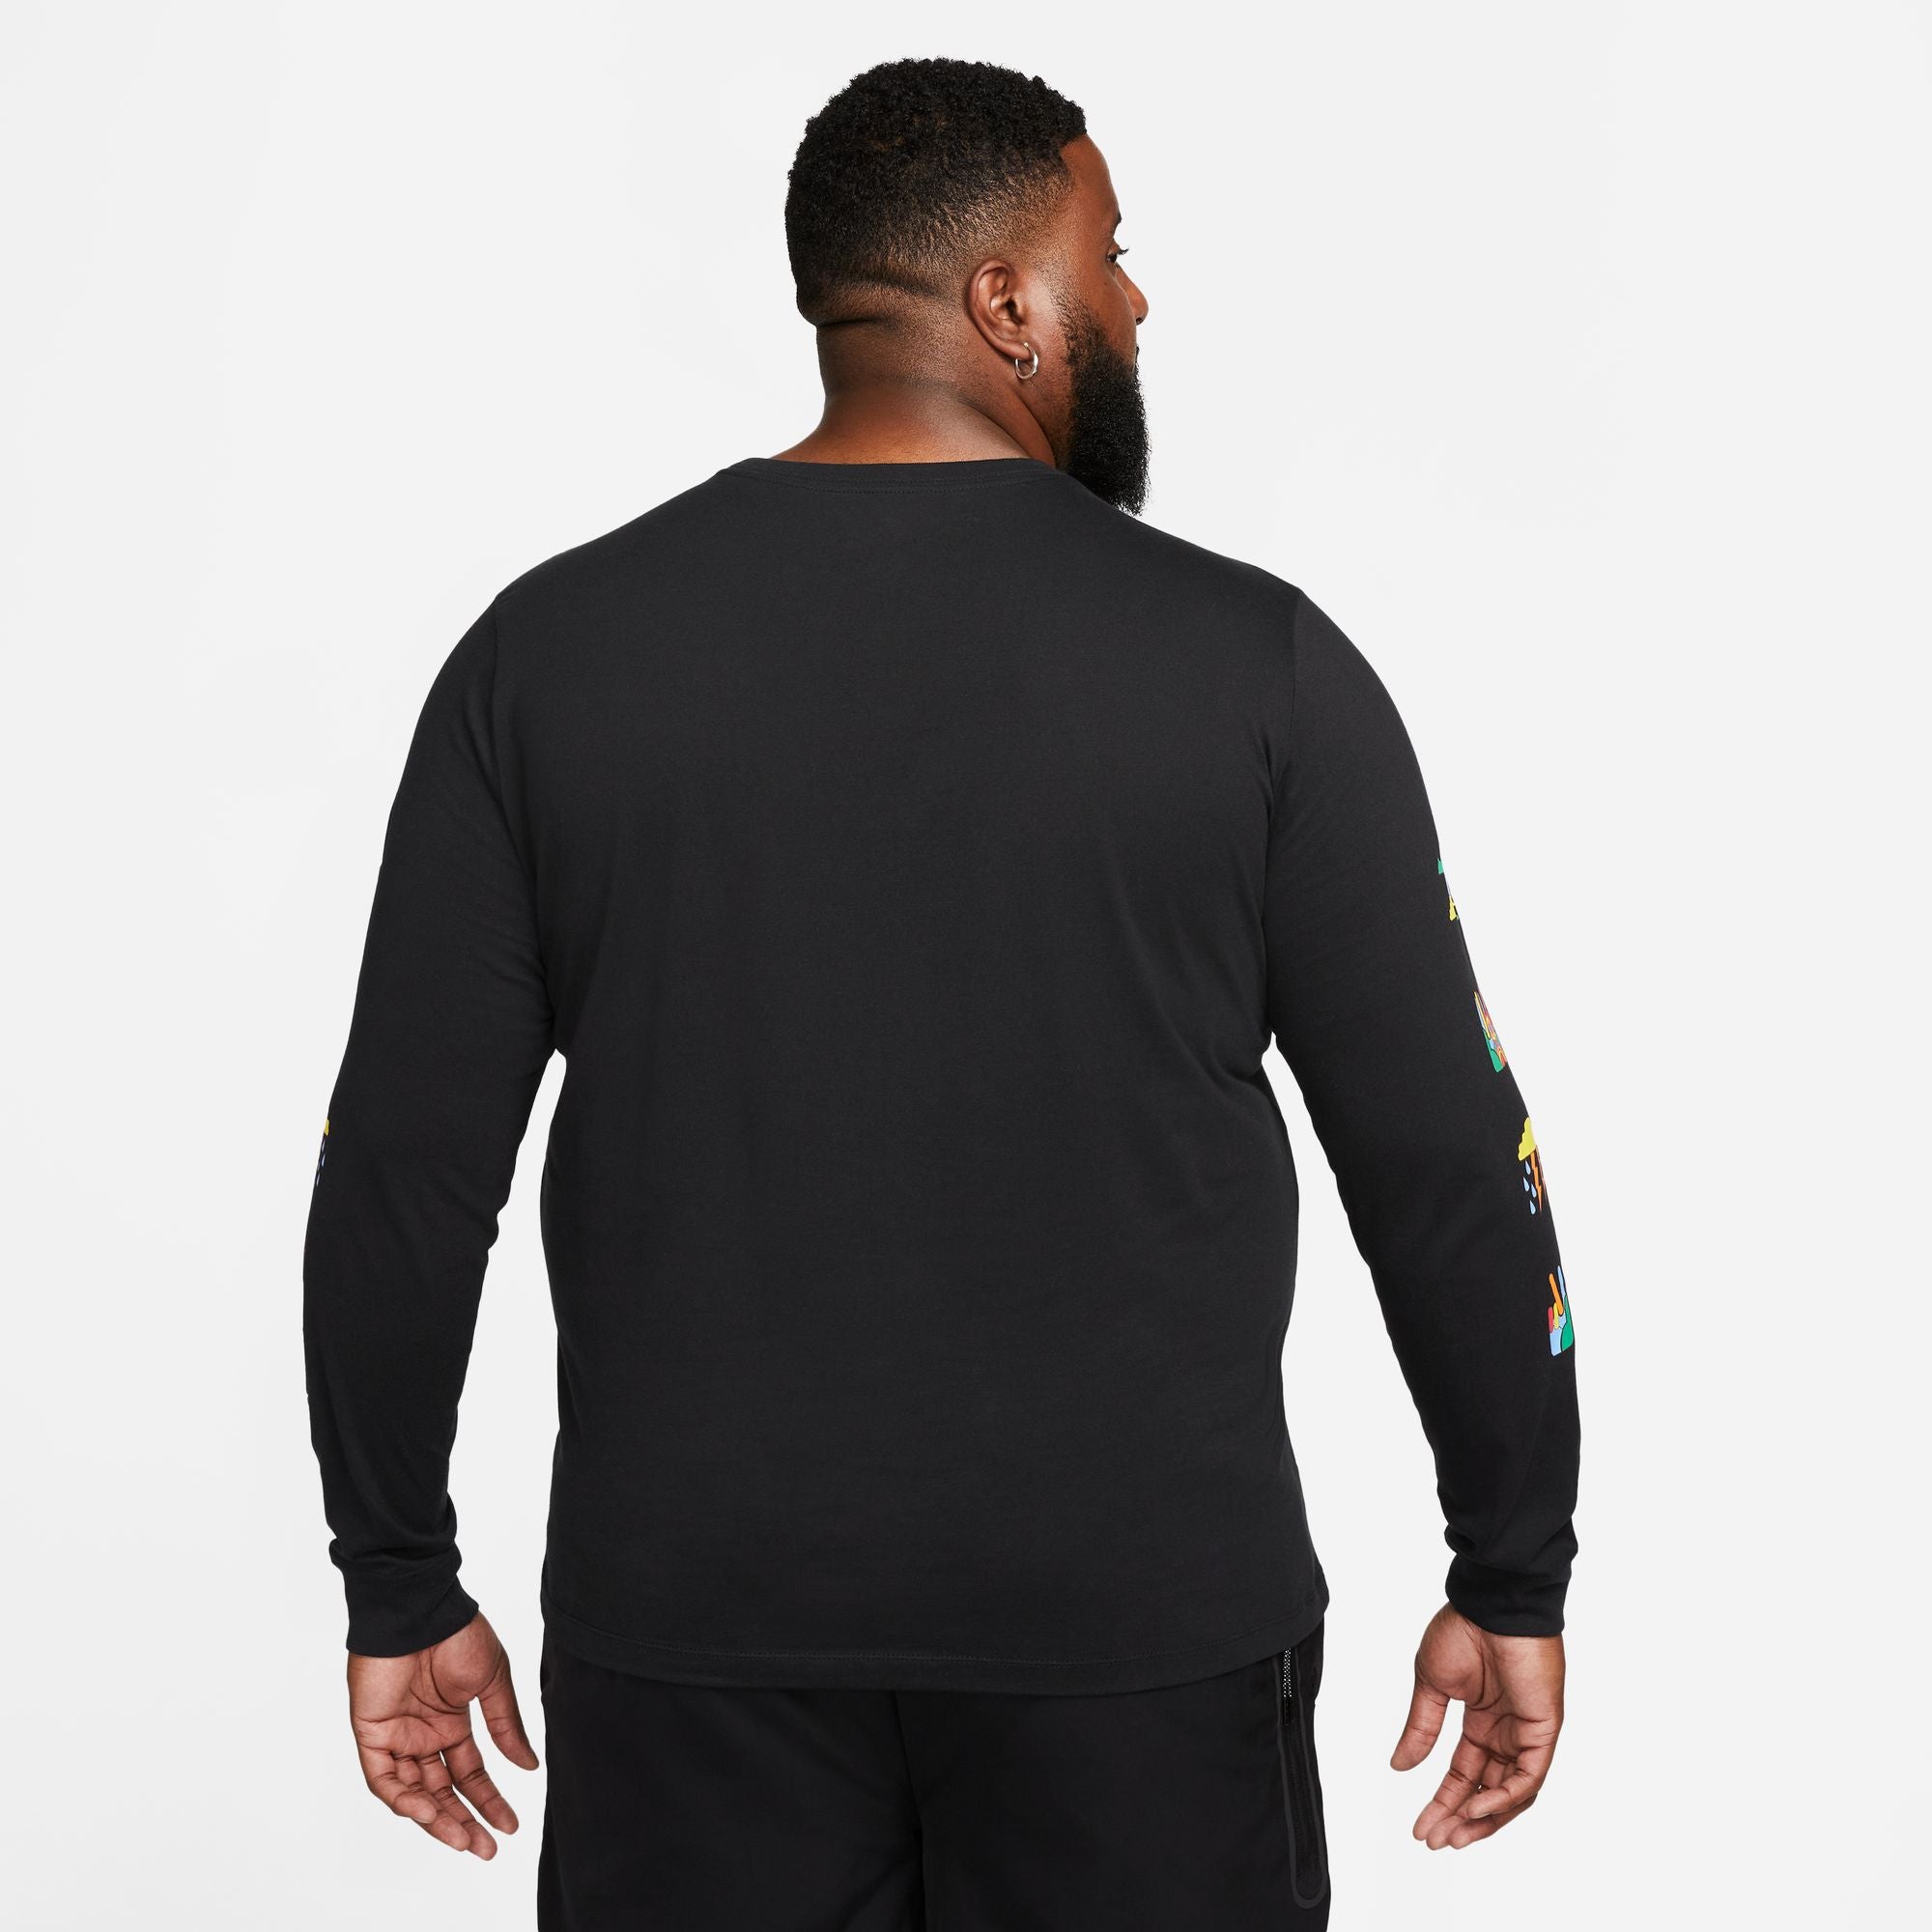 Nike Sportswear Men's Long-Sleeve T-Shirt